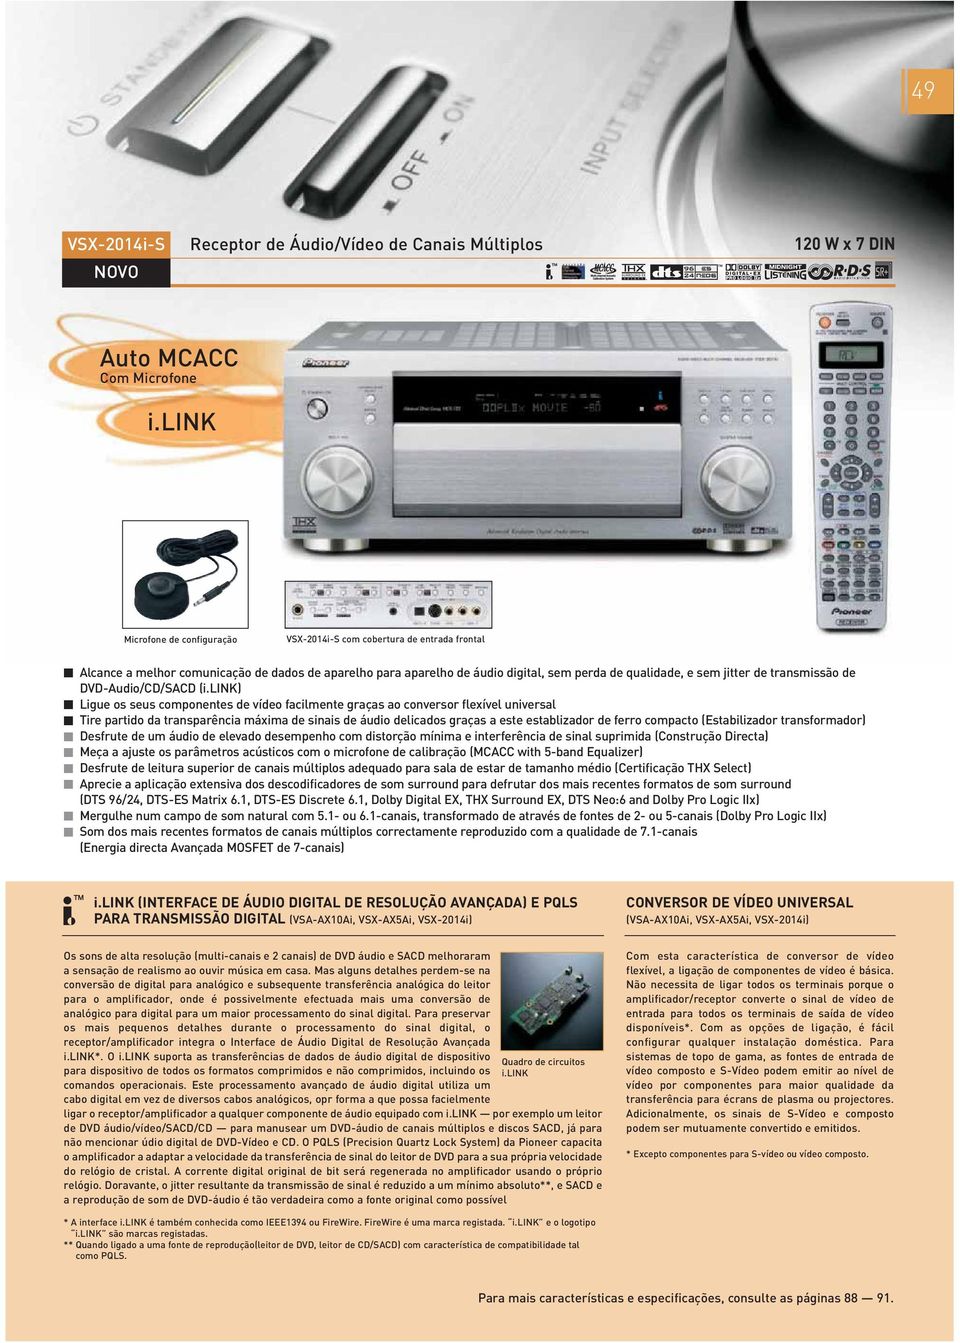 transmissão de DVD-Audio/CD/SACD (i.